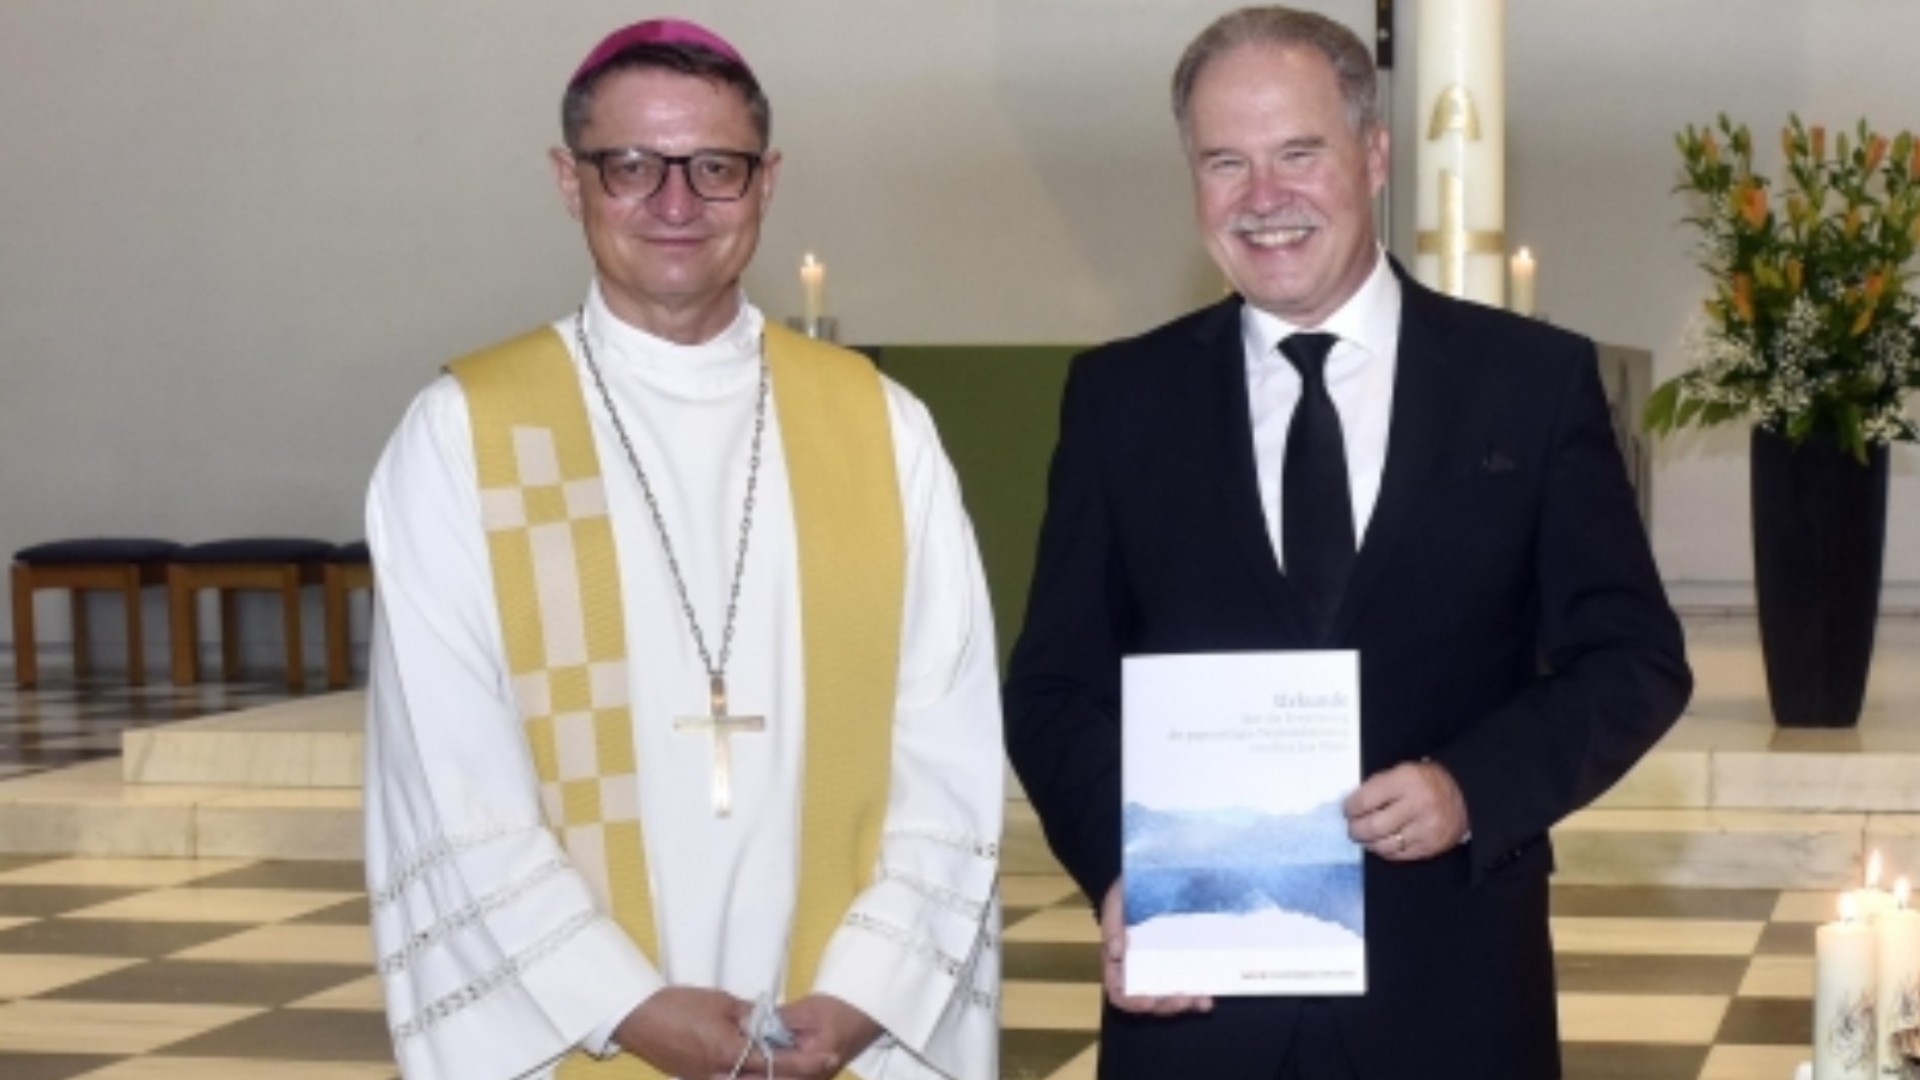 Mgr Felix Gmür, président de la Conférence des évêques suisses (CES), a signé l’ acte de reconnaissance mutuelle du baptême avec l’apôtre de district Jürg Zbinden, président de l’Eglise néo-apostolique de Suisse | © CES/ENA